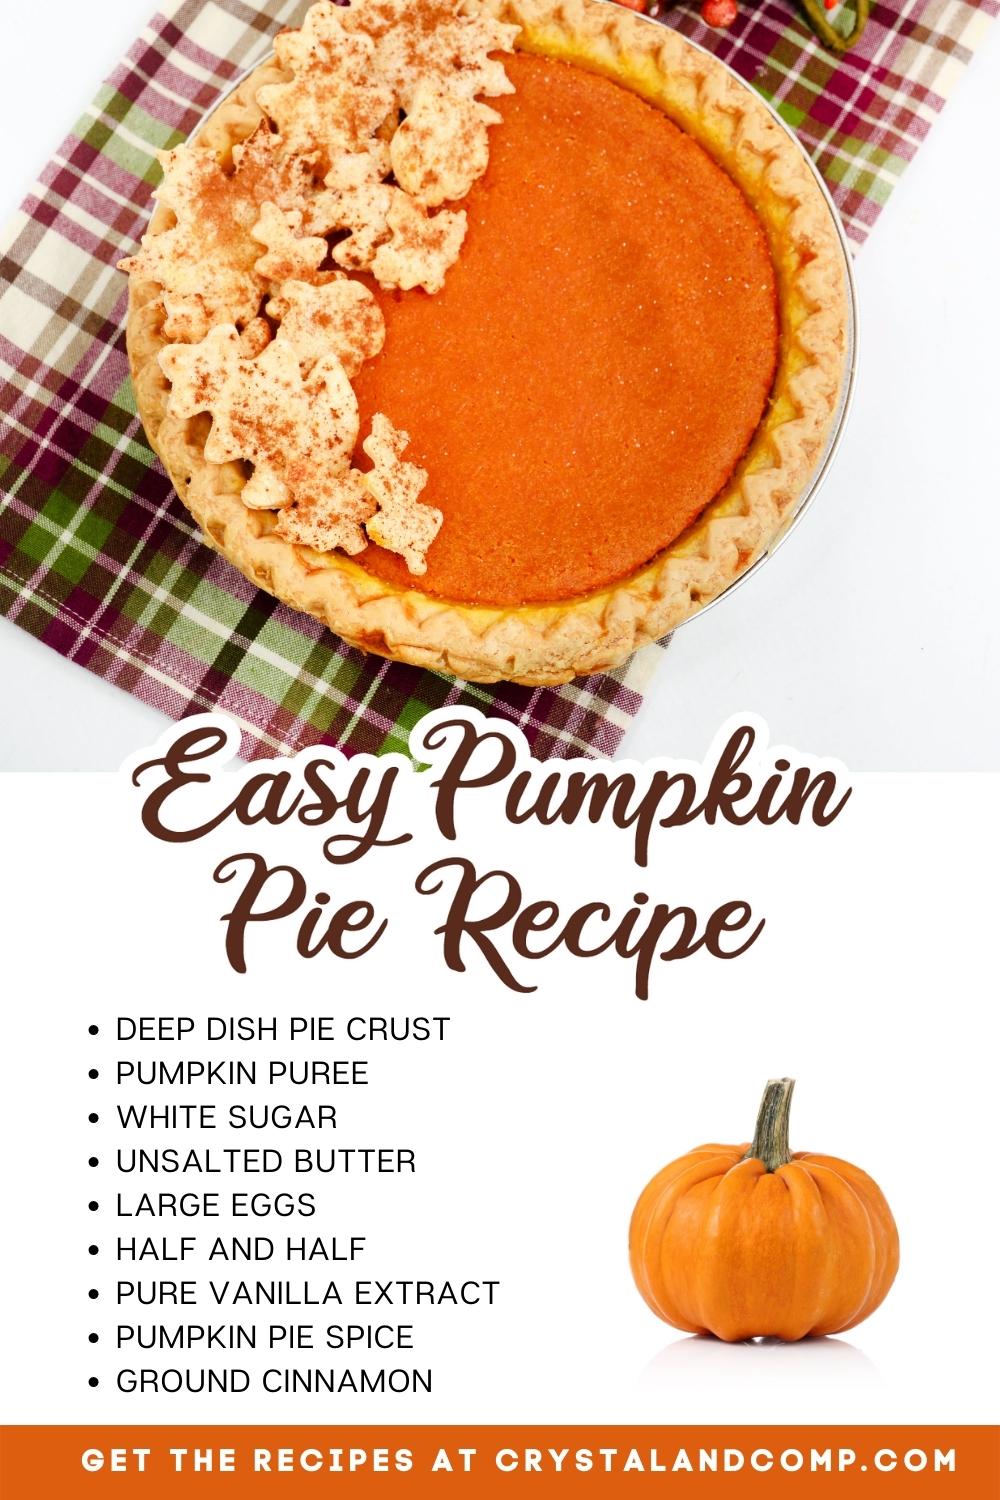 pumpkin pie recipe ingredients list